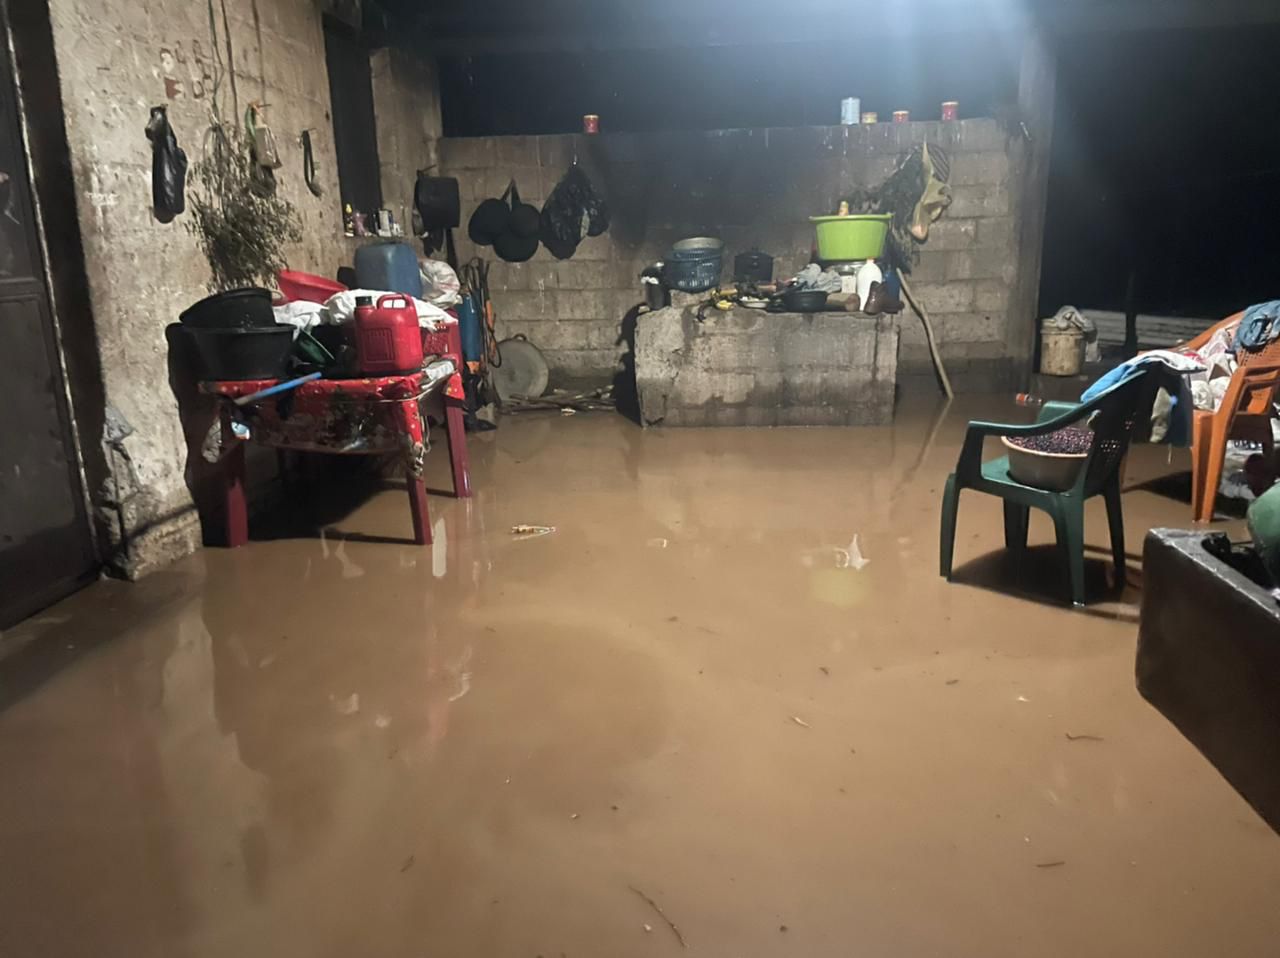 El río Talpetate se desbordó por la lluvia y causó inundación súbita en viviendas de la aldea Talpetate, Taxisco, Santa Rosa. (Foto Prensa Libre: Conred)